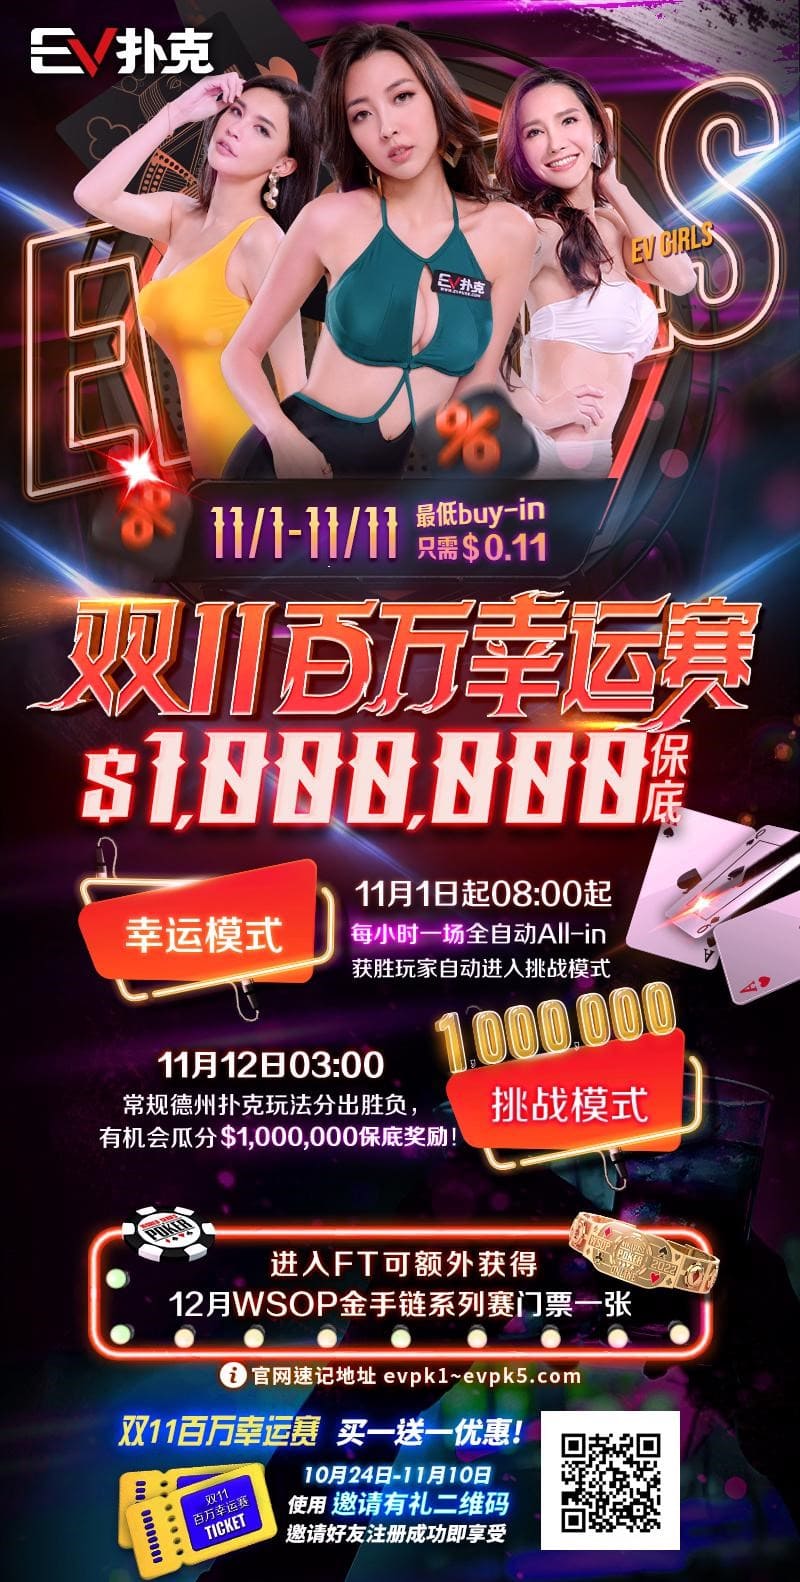 【EV 扑克】国人玩家 Anson Tsang 成为第 125 位赢得三条金手链的玩家